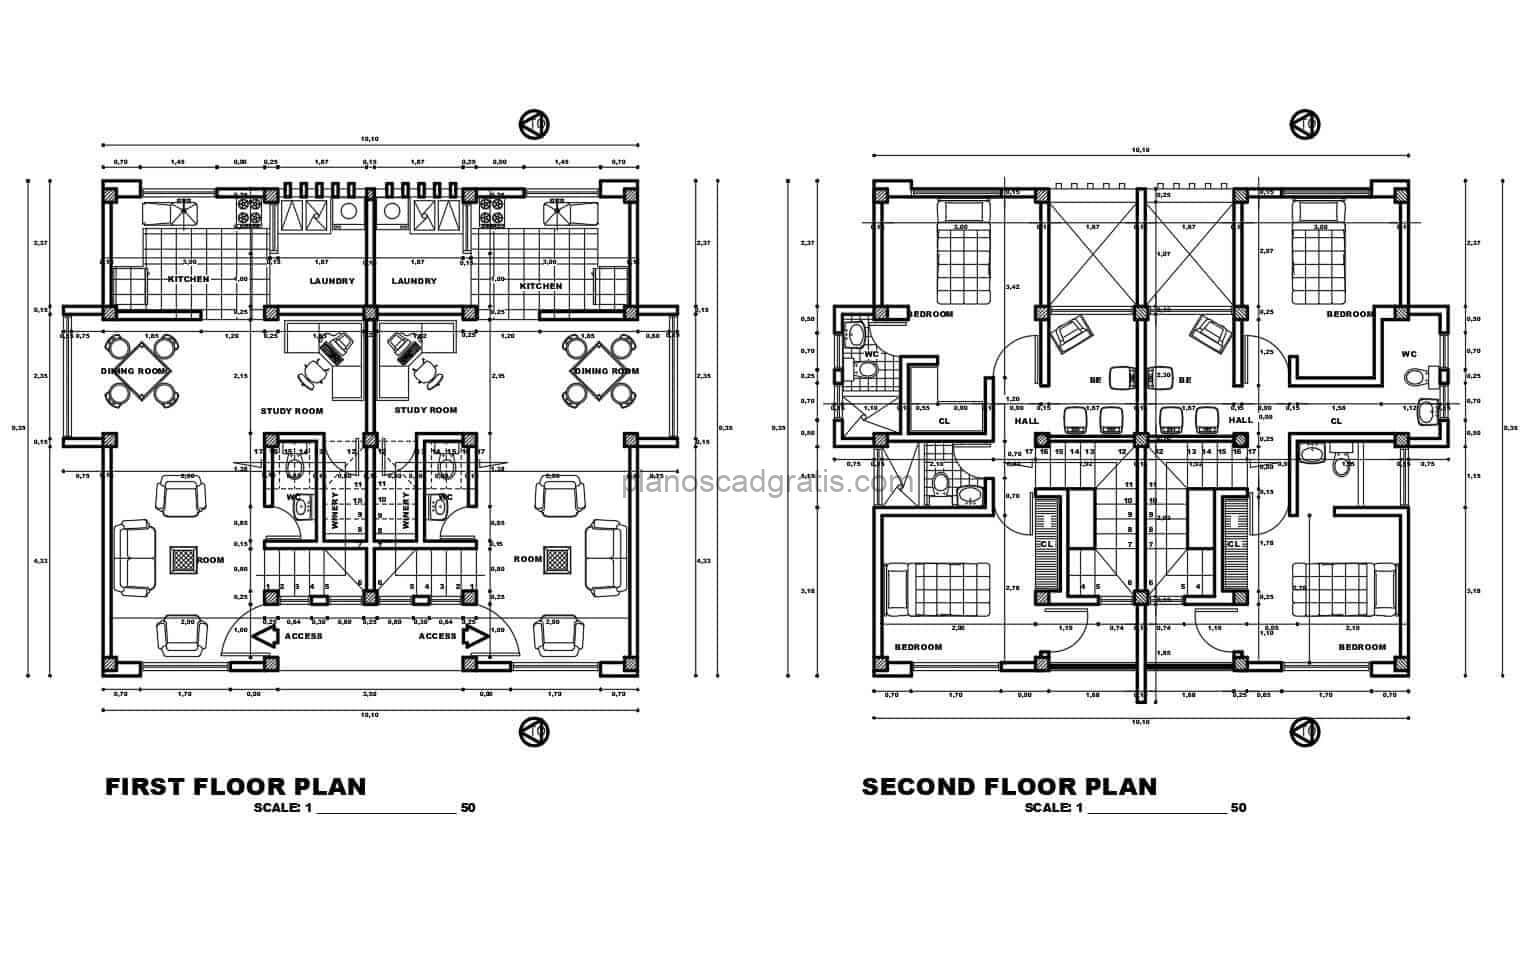 planos arquitectonicos con dimensiones de casa duplex de dos niveles con dimensiones y secciones, fachadas y detalles constructivos en formato dwg de autocad para descarga gratis